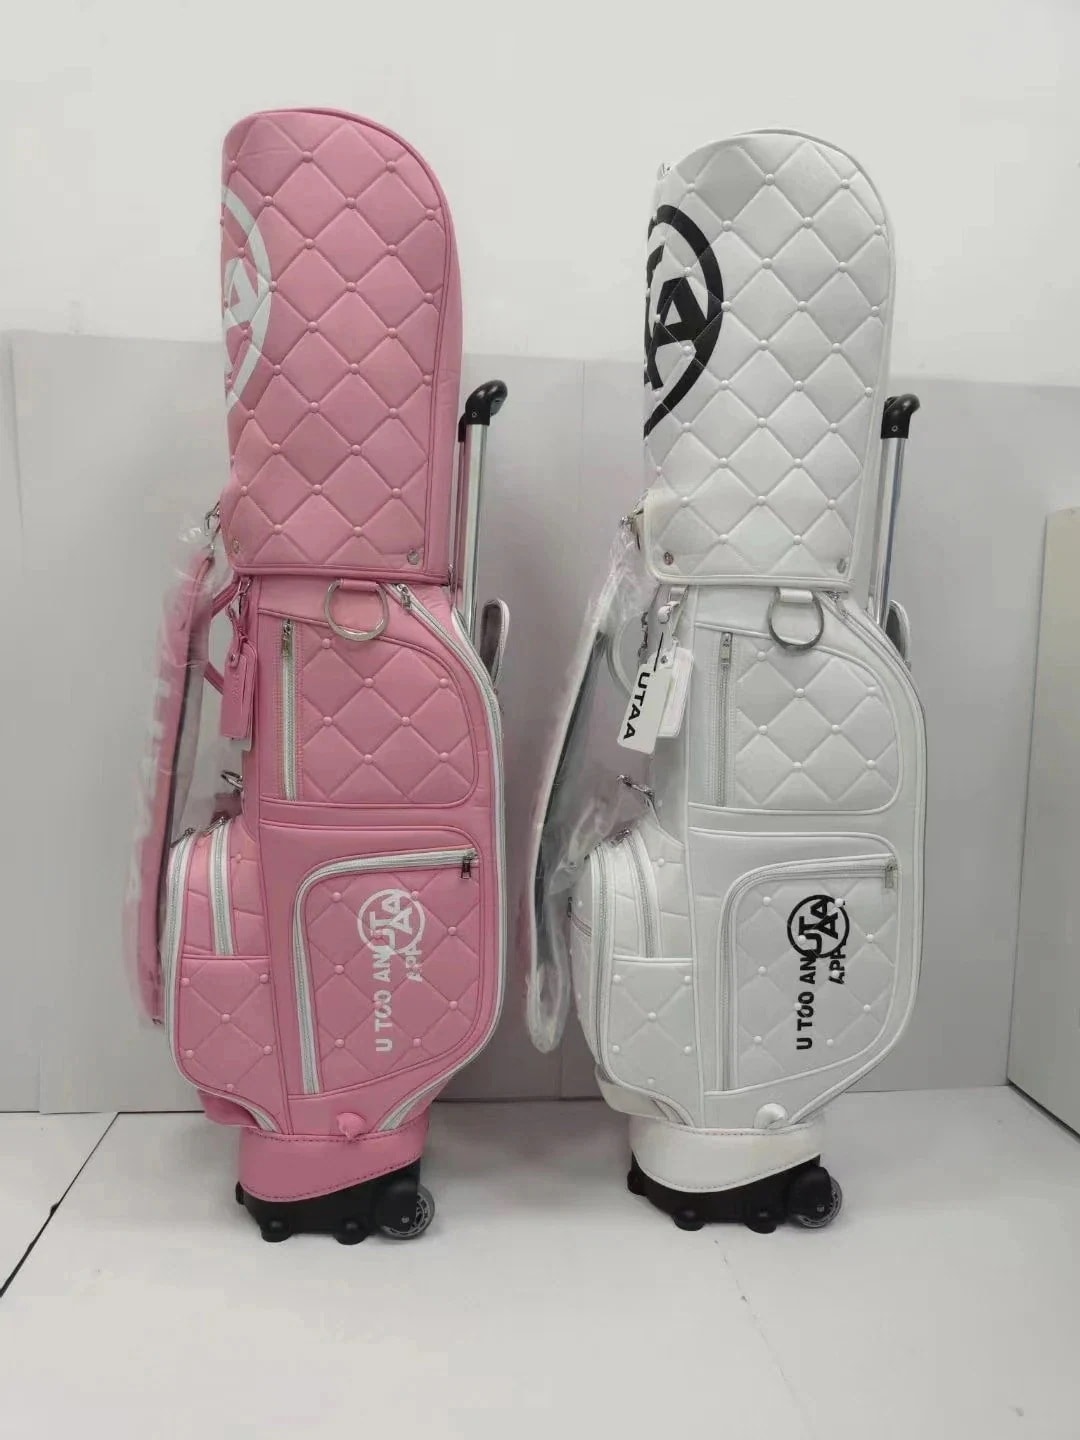 ゴルフバッグ キャディーバッグ ポータブルボストンキャディバッグ ピンクと黒の二輪カート 防水 軽量 ゴルフ服バッグ